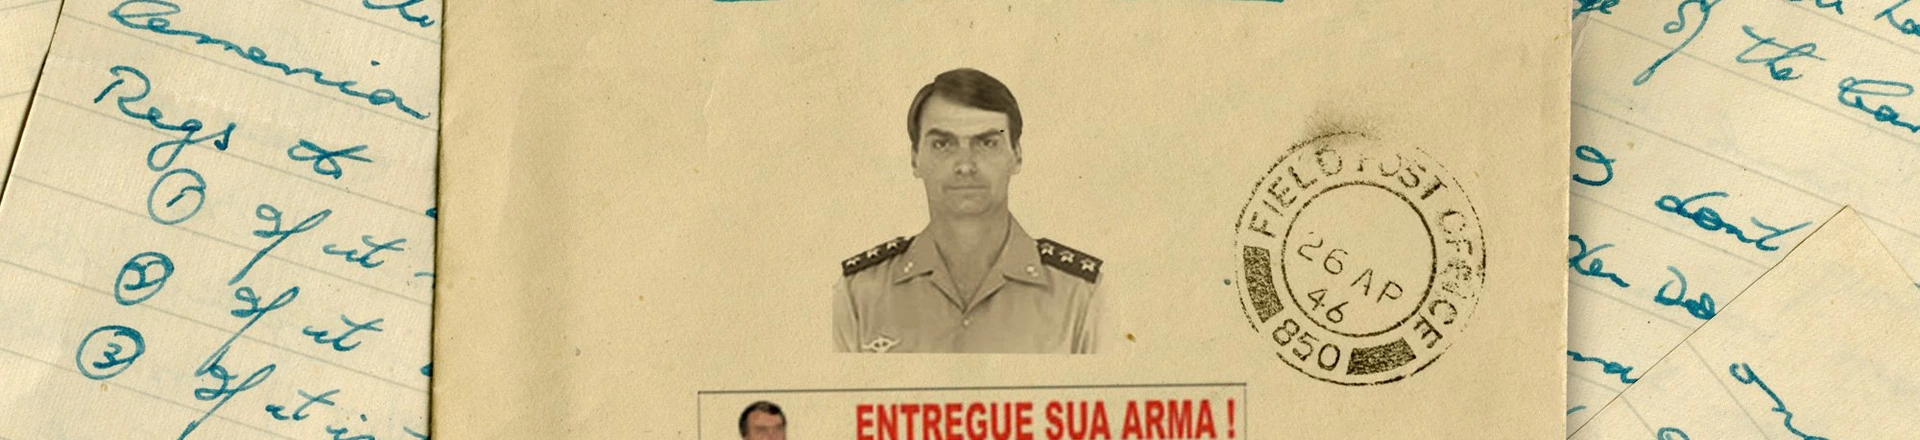 Pesquisadora encontra carta de Bolsonaro publicada em sites neonazistas em 2004